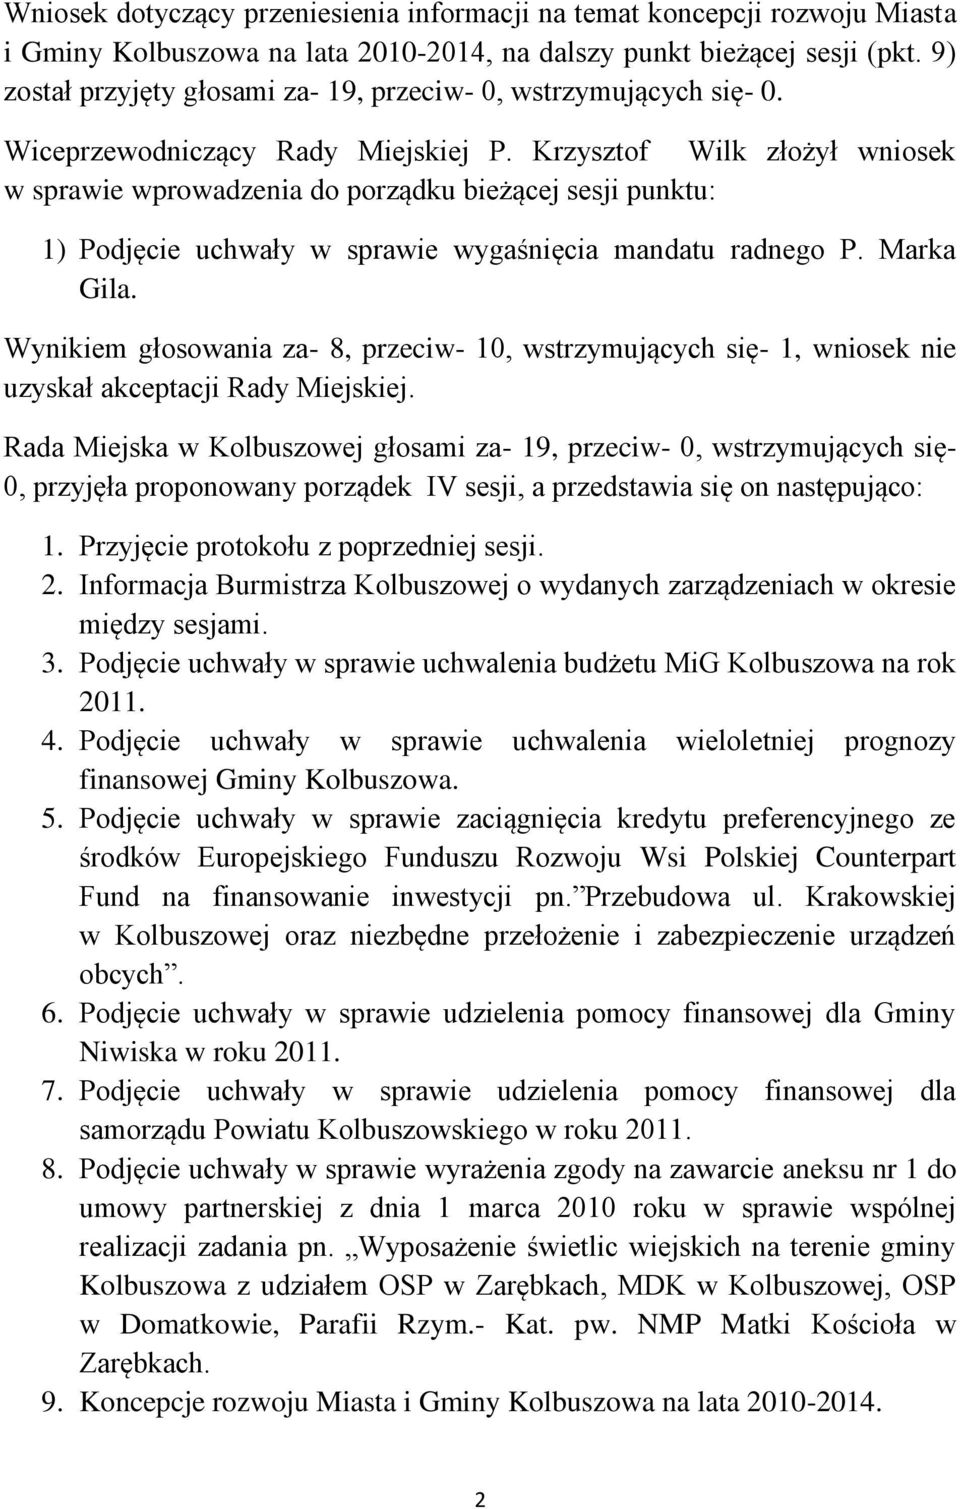 Krzysztof Wilk złożył wniosek w sprawie wprowadzenia do porządku bieżącej sesji punktu: 1) Podjęcie uchwały w sprawie wygaśnięcia mandatu radnego P. Marka Gila.